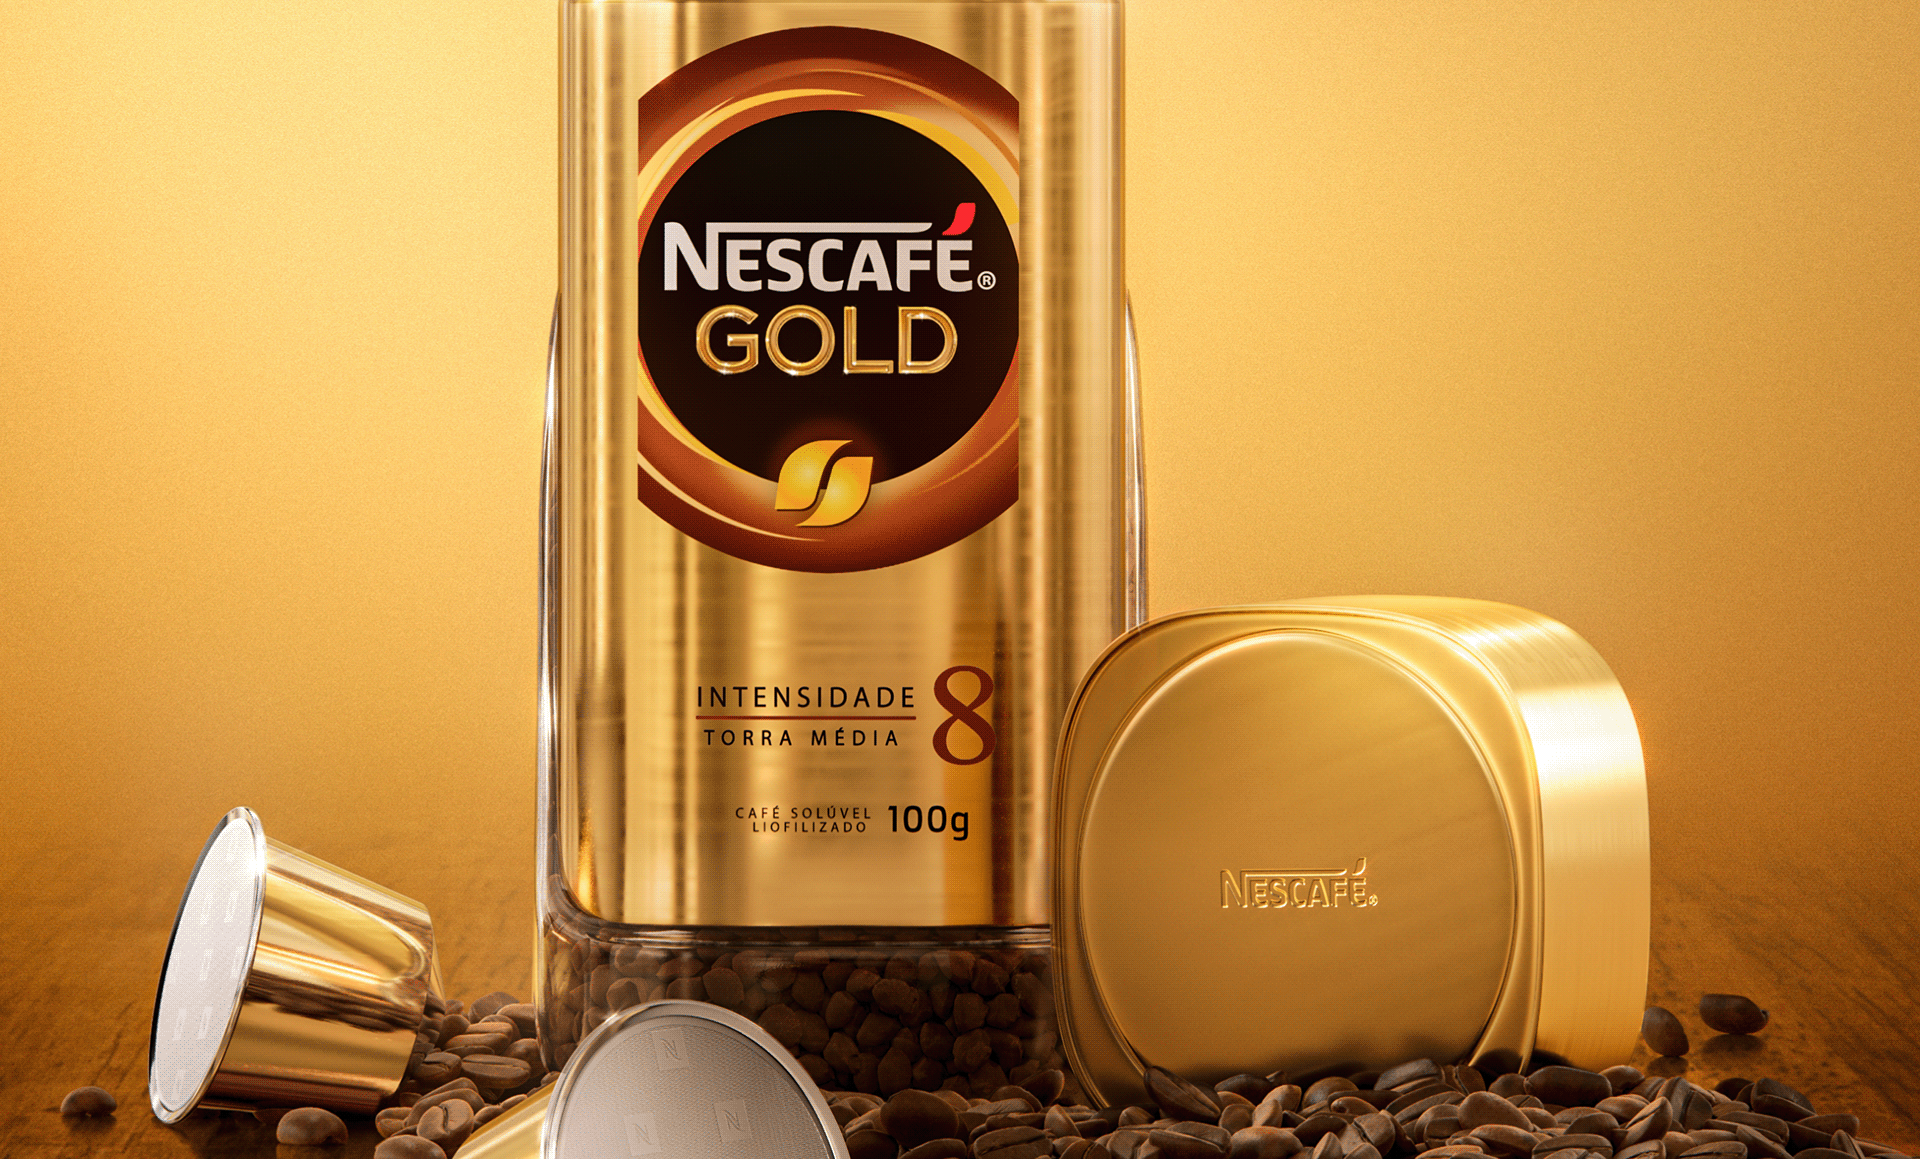 Включи золотая 3. Нескафе Голд. Nescafe Gold aromat 290g. Nescafe Gold 60u. Nescafe Gold dp 320g.